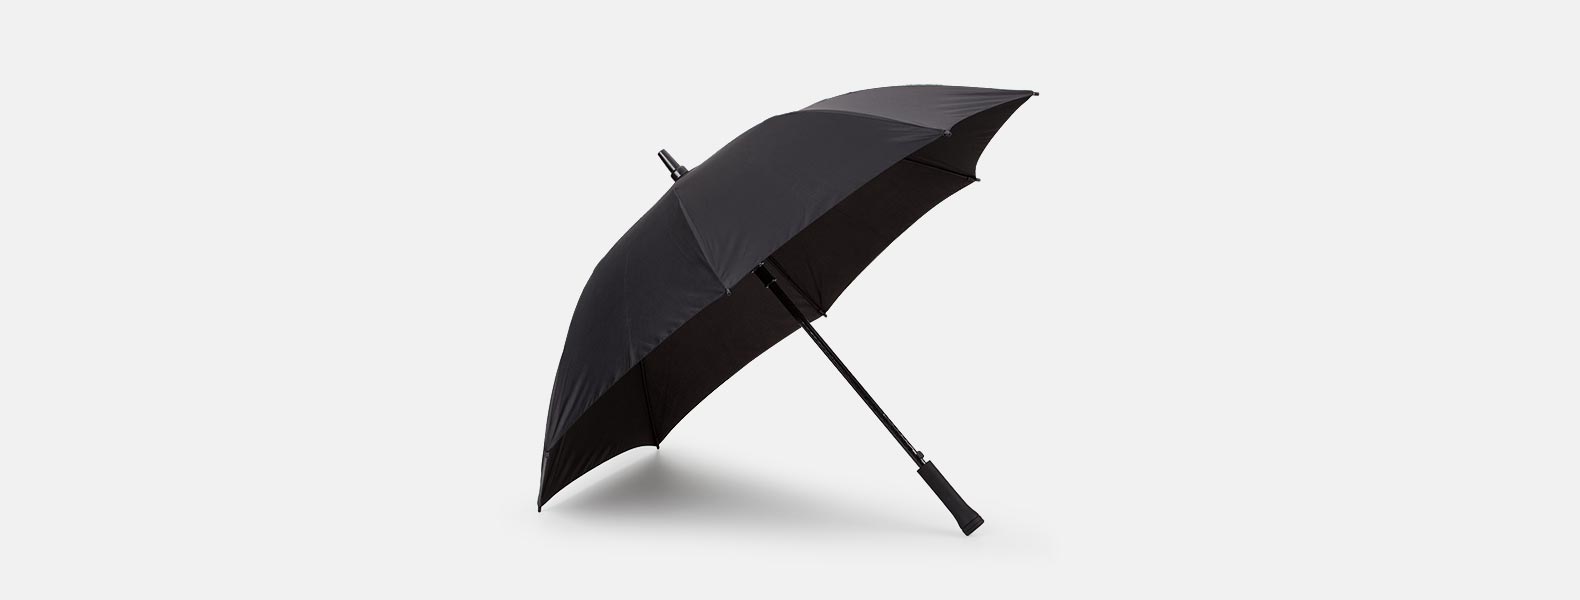 Guarda-chuva em Seda Sintética preto automático com haste em Fibra de Vidro 14mm e empunhadura reta em ABS.